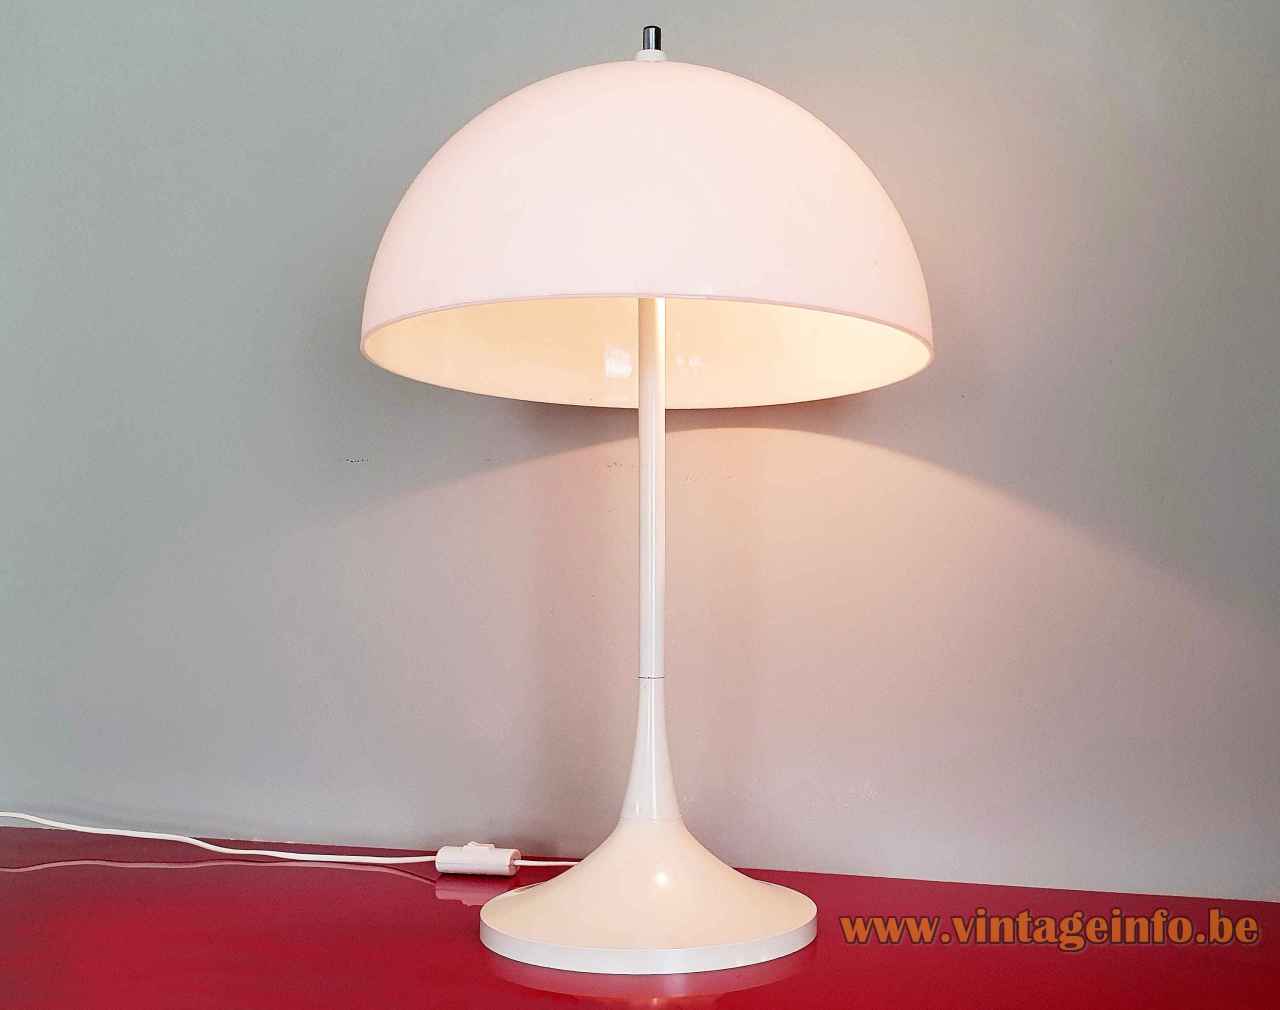 Hala mushroom table lamp round white plastic base & rod acrylic lampshade 1960s 1970s E14 sockets Netherlands 